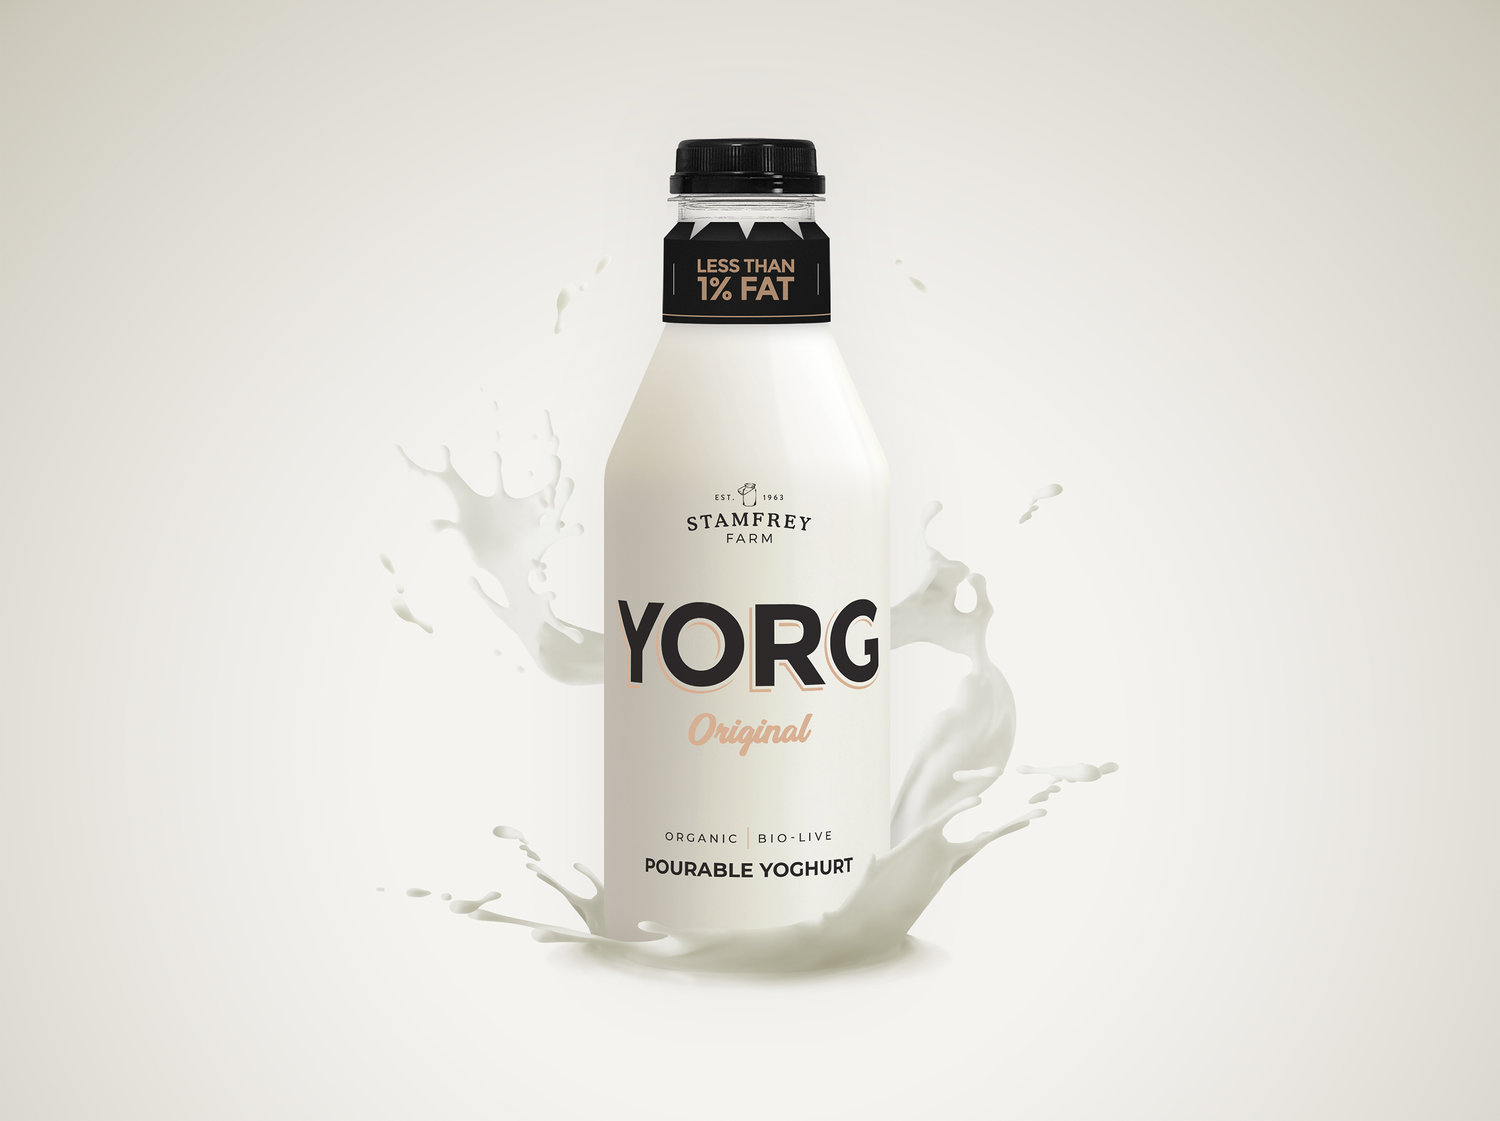 Yorg酸奶产品的品牌和包装设计(图3)